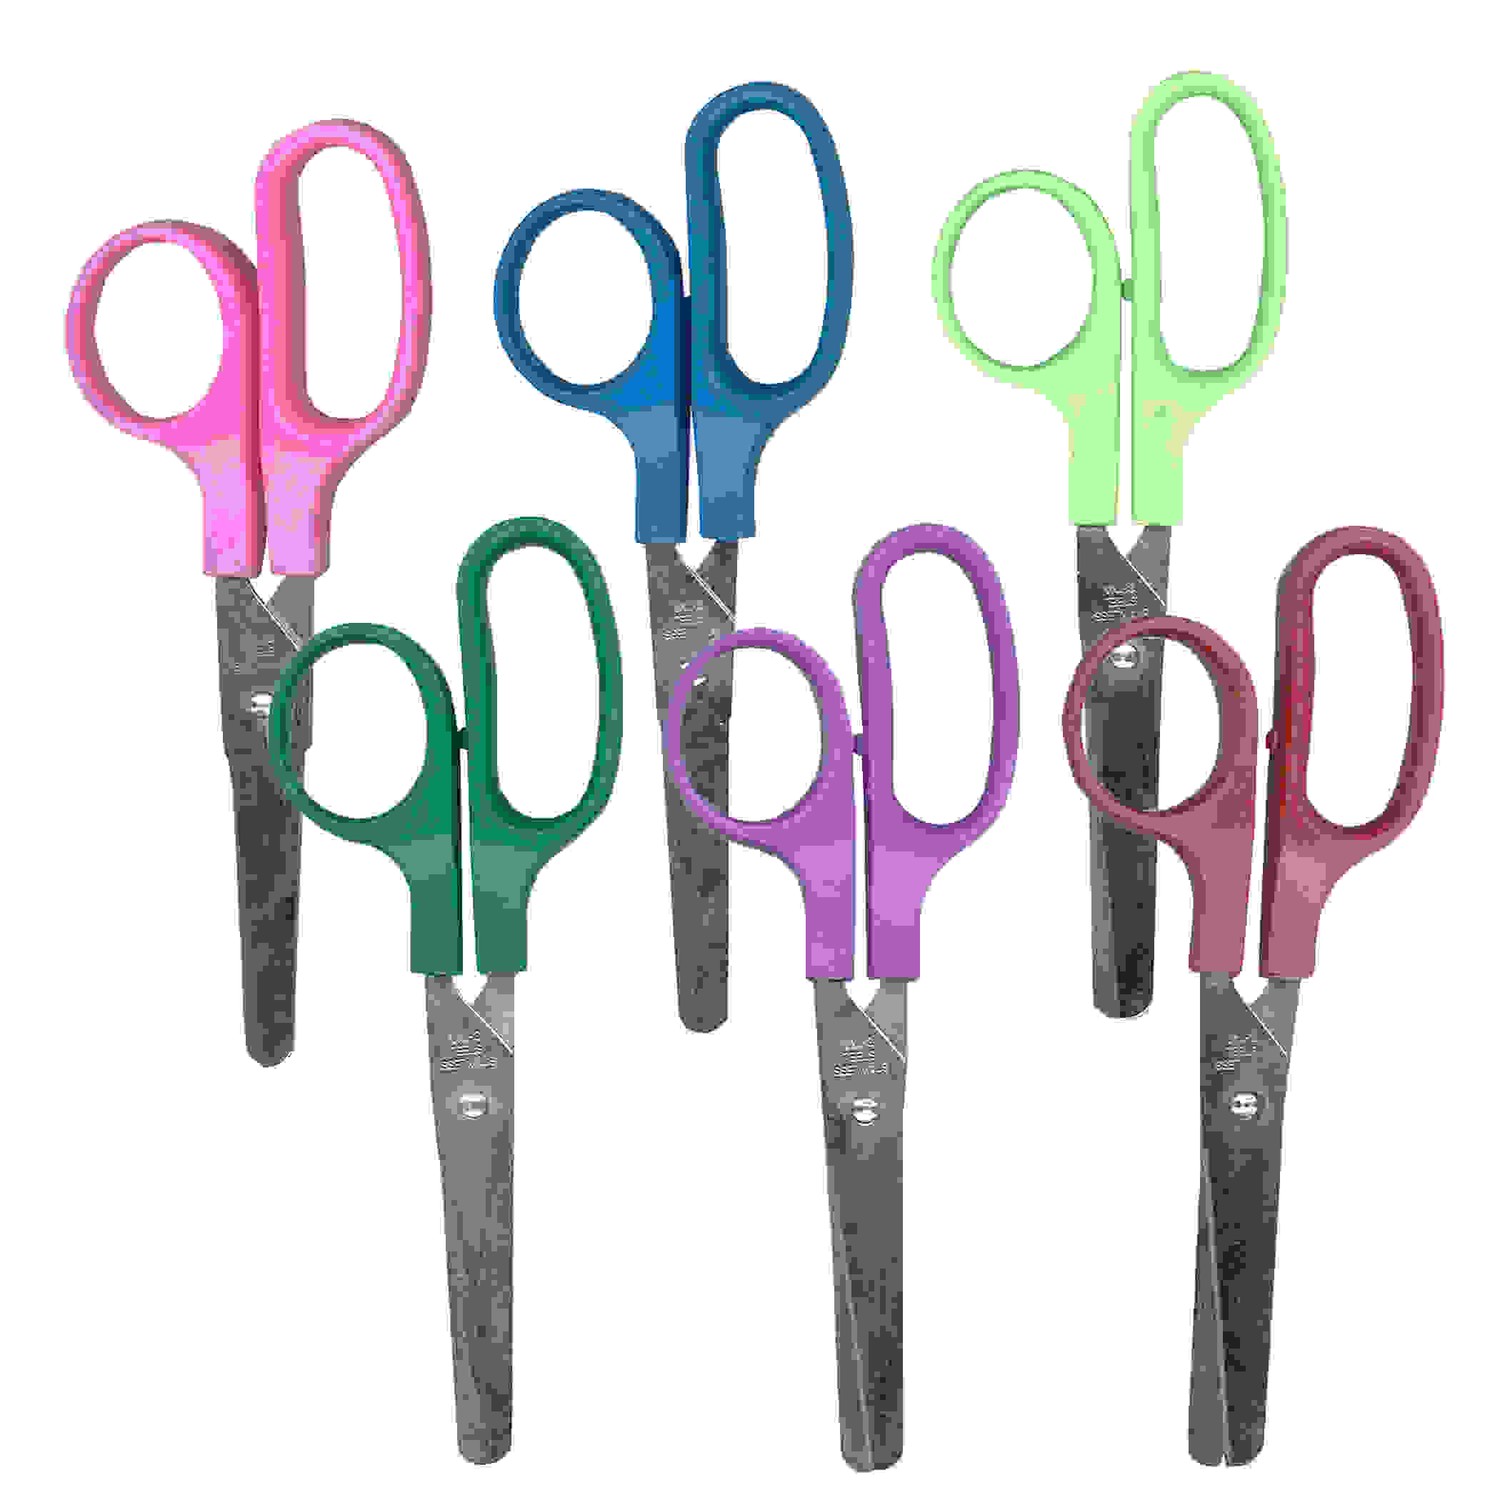 Children's Scissors, 5", Blunt Tip, Assorted Colors